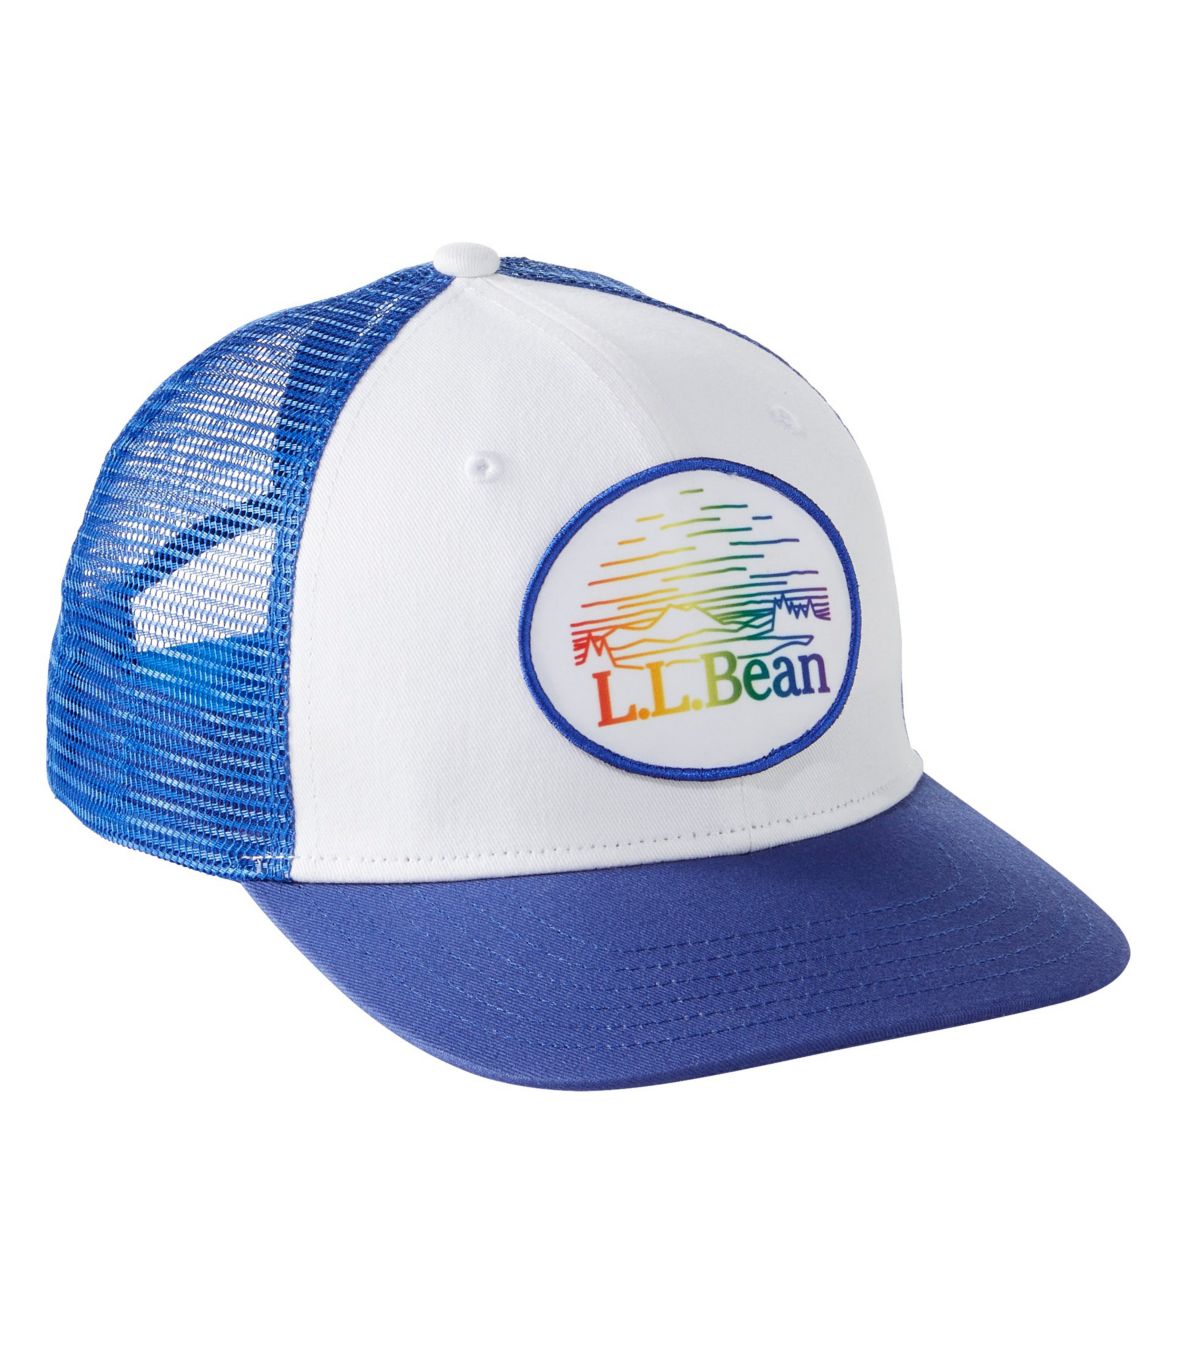 Adults' L.L.Bean Trucker Hat